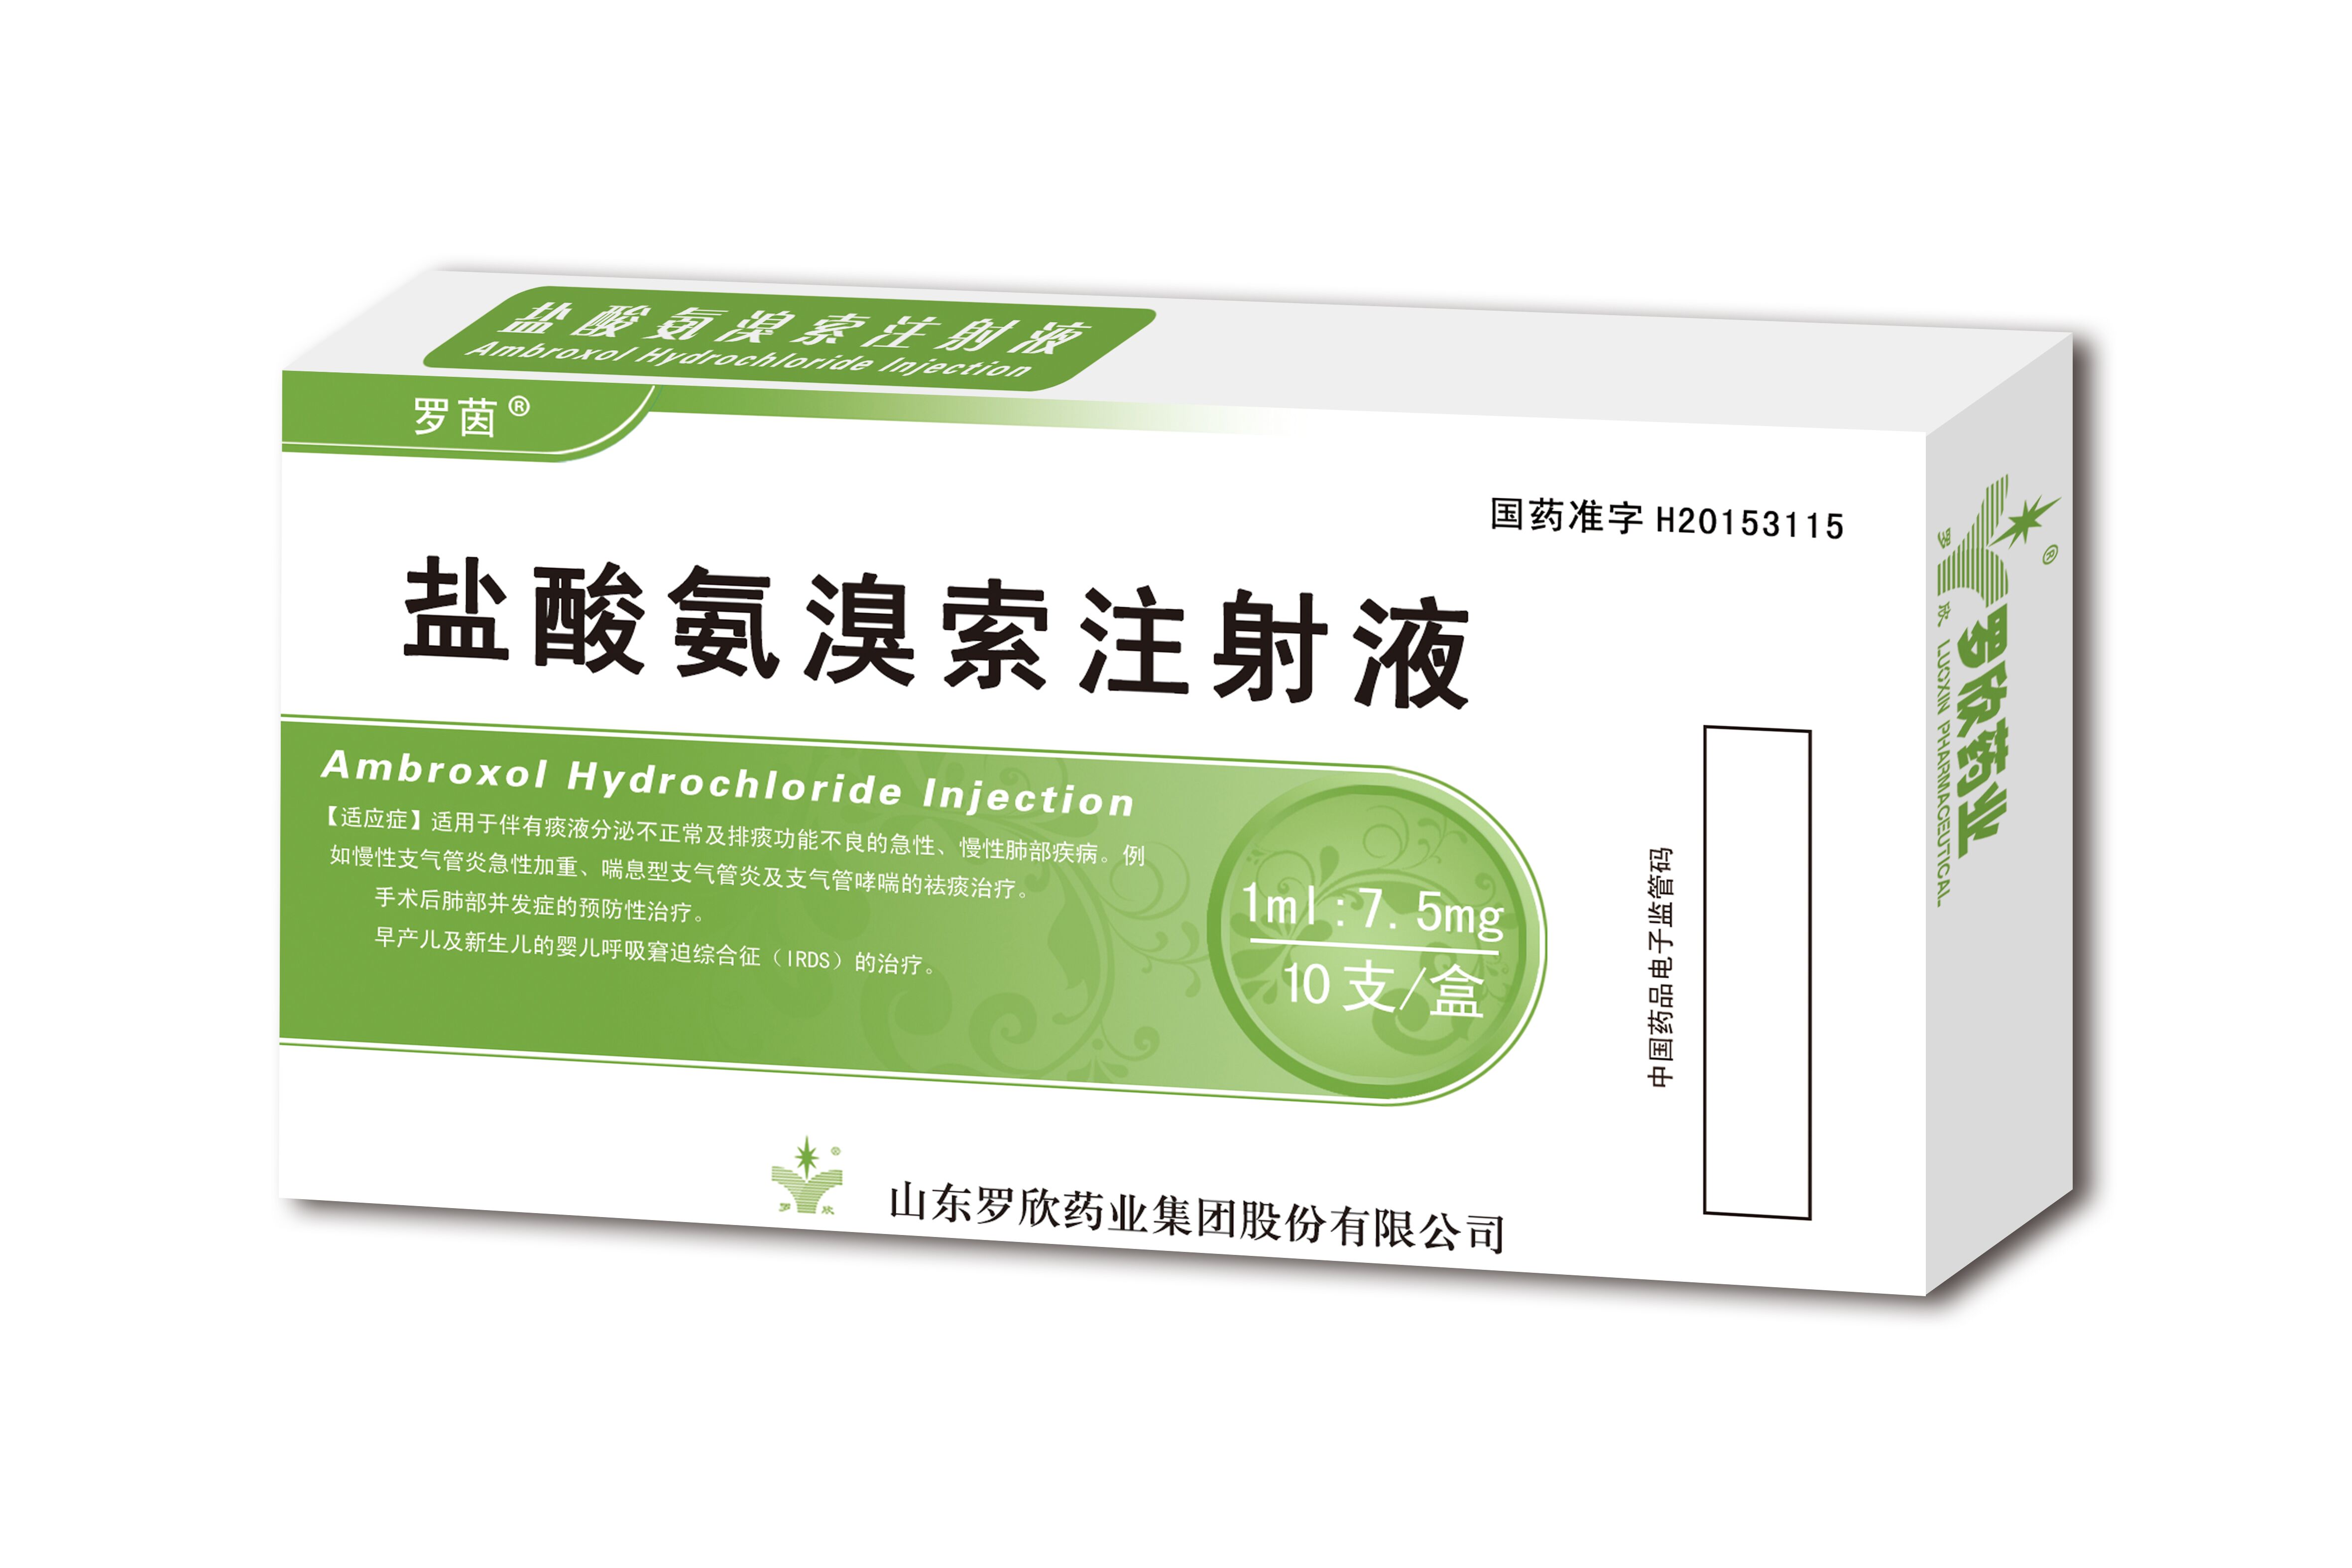 中国氨溴索雾化吸入剂——易安平®上市 - 公司专区 - 生物谷